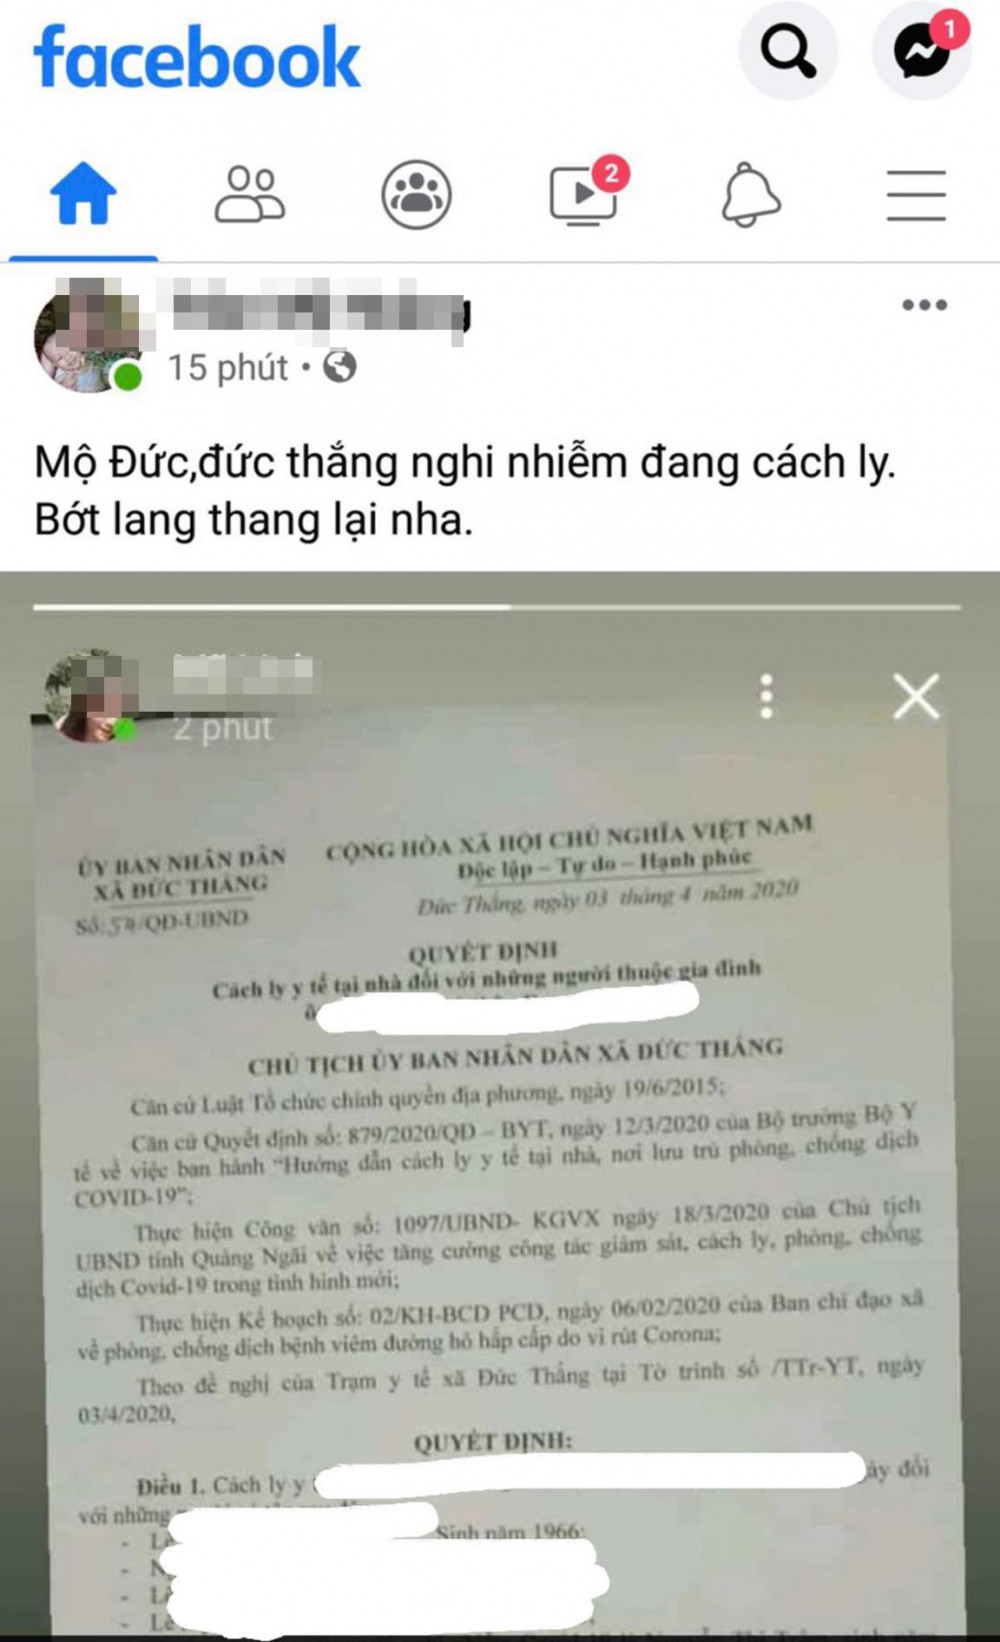 Tài khoản Facebook của bà Trần Thị My H. đưa rõ thông tin của người cách ly y tế